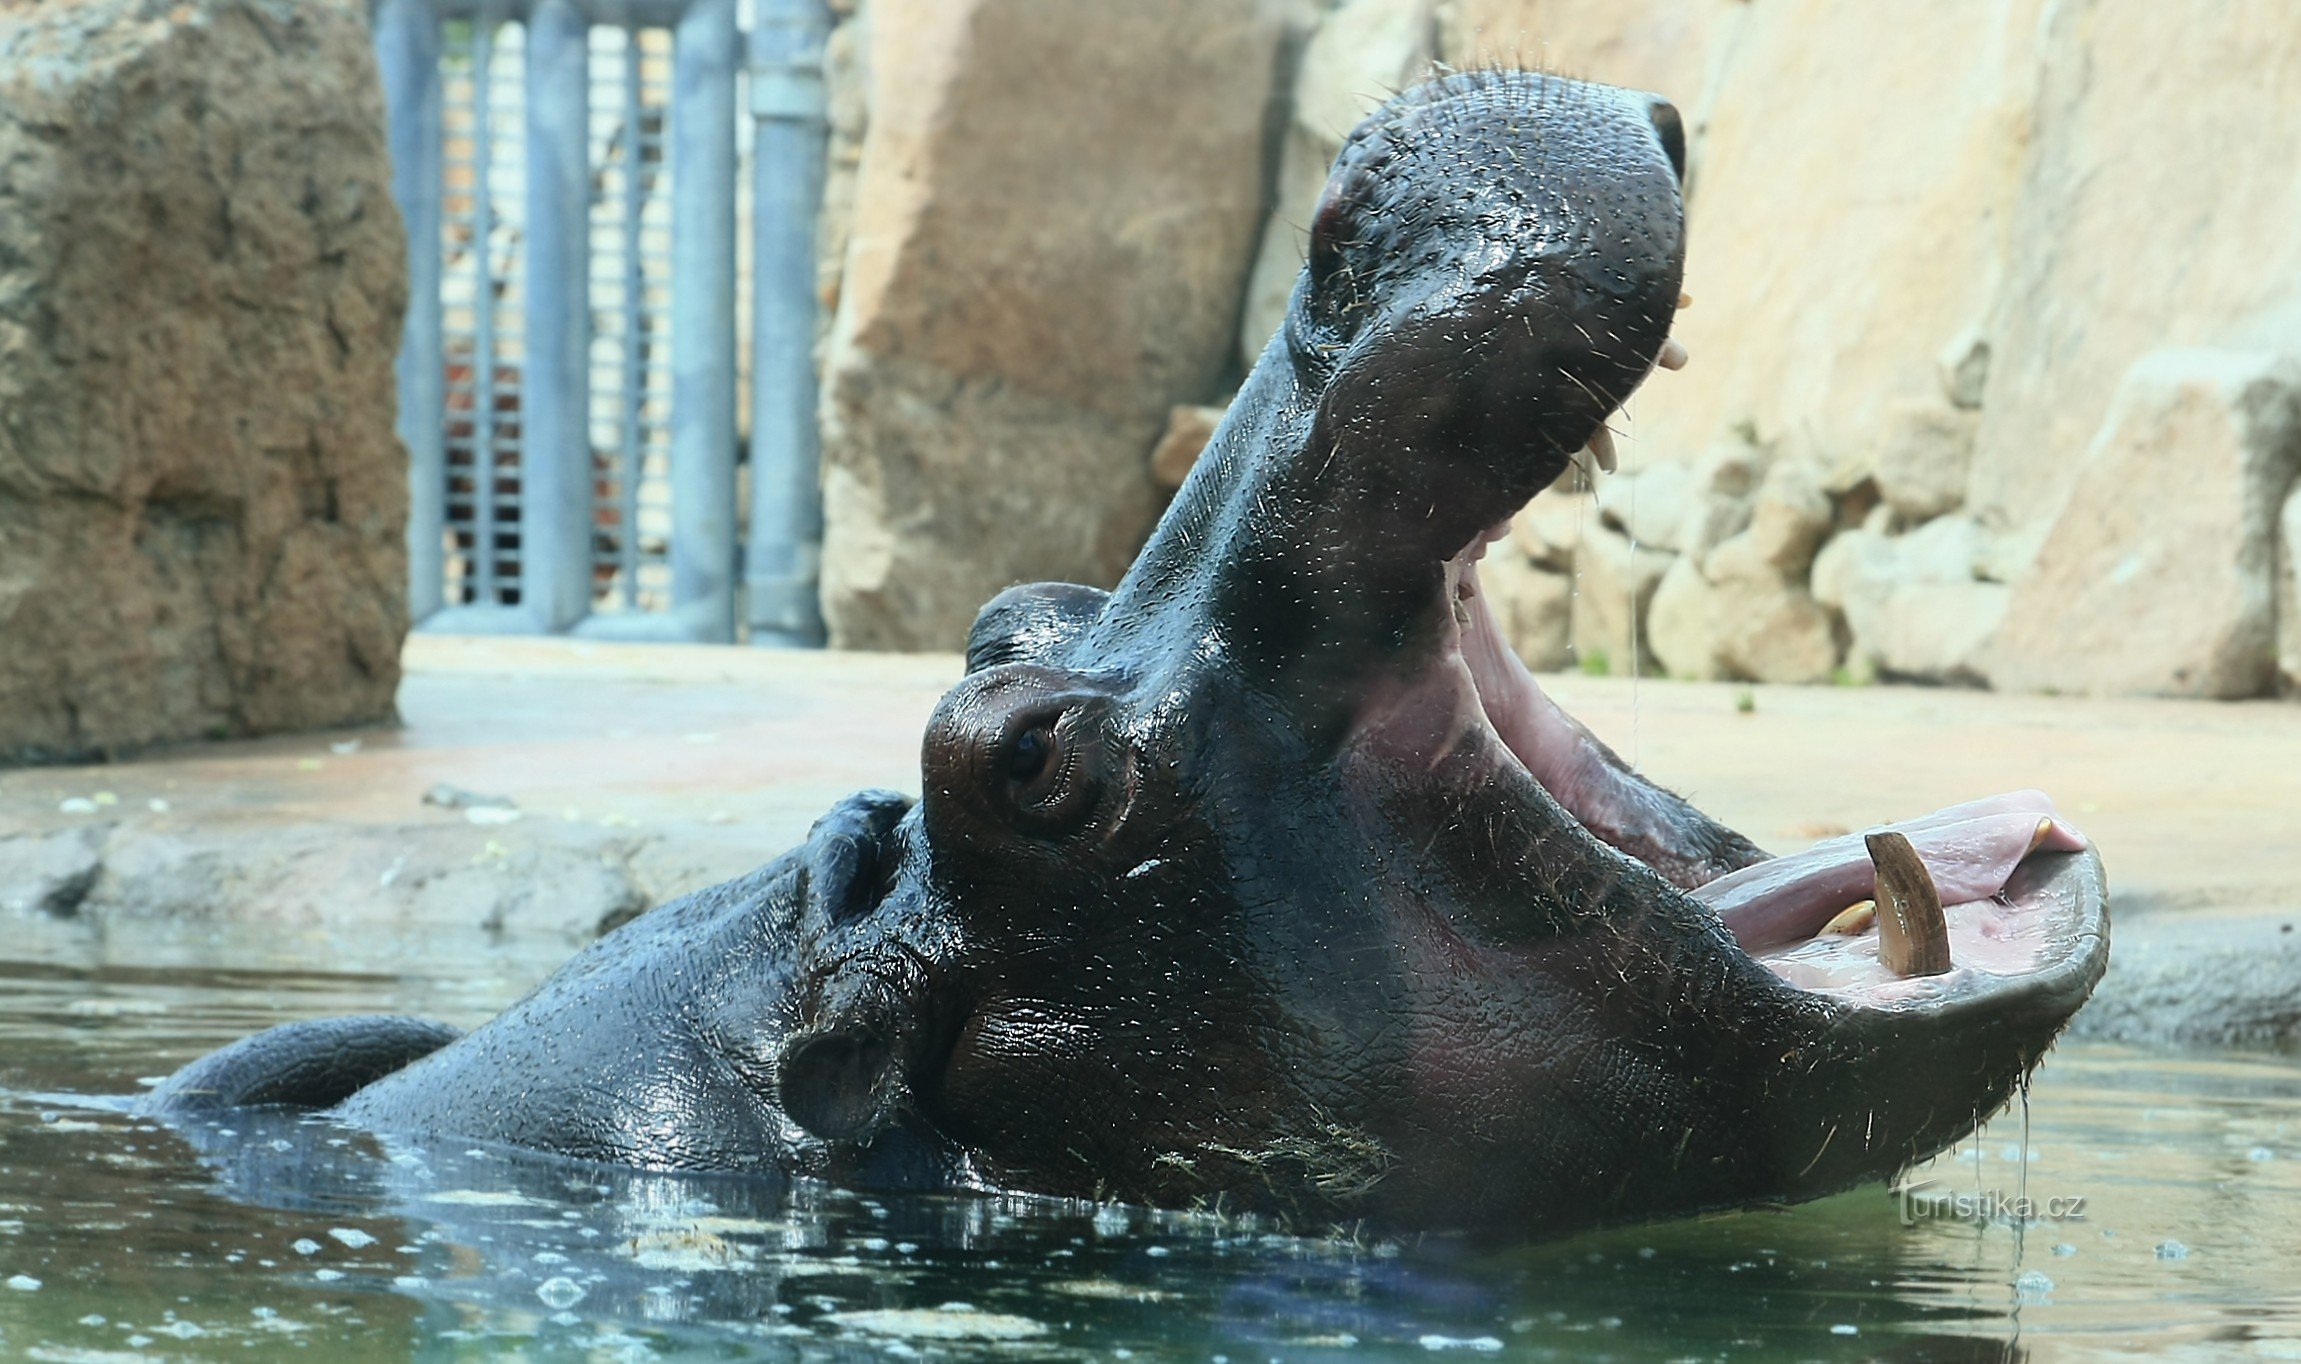 ZOO Praga Troja 2014 - un hipopotam în spatele geamului